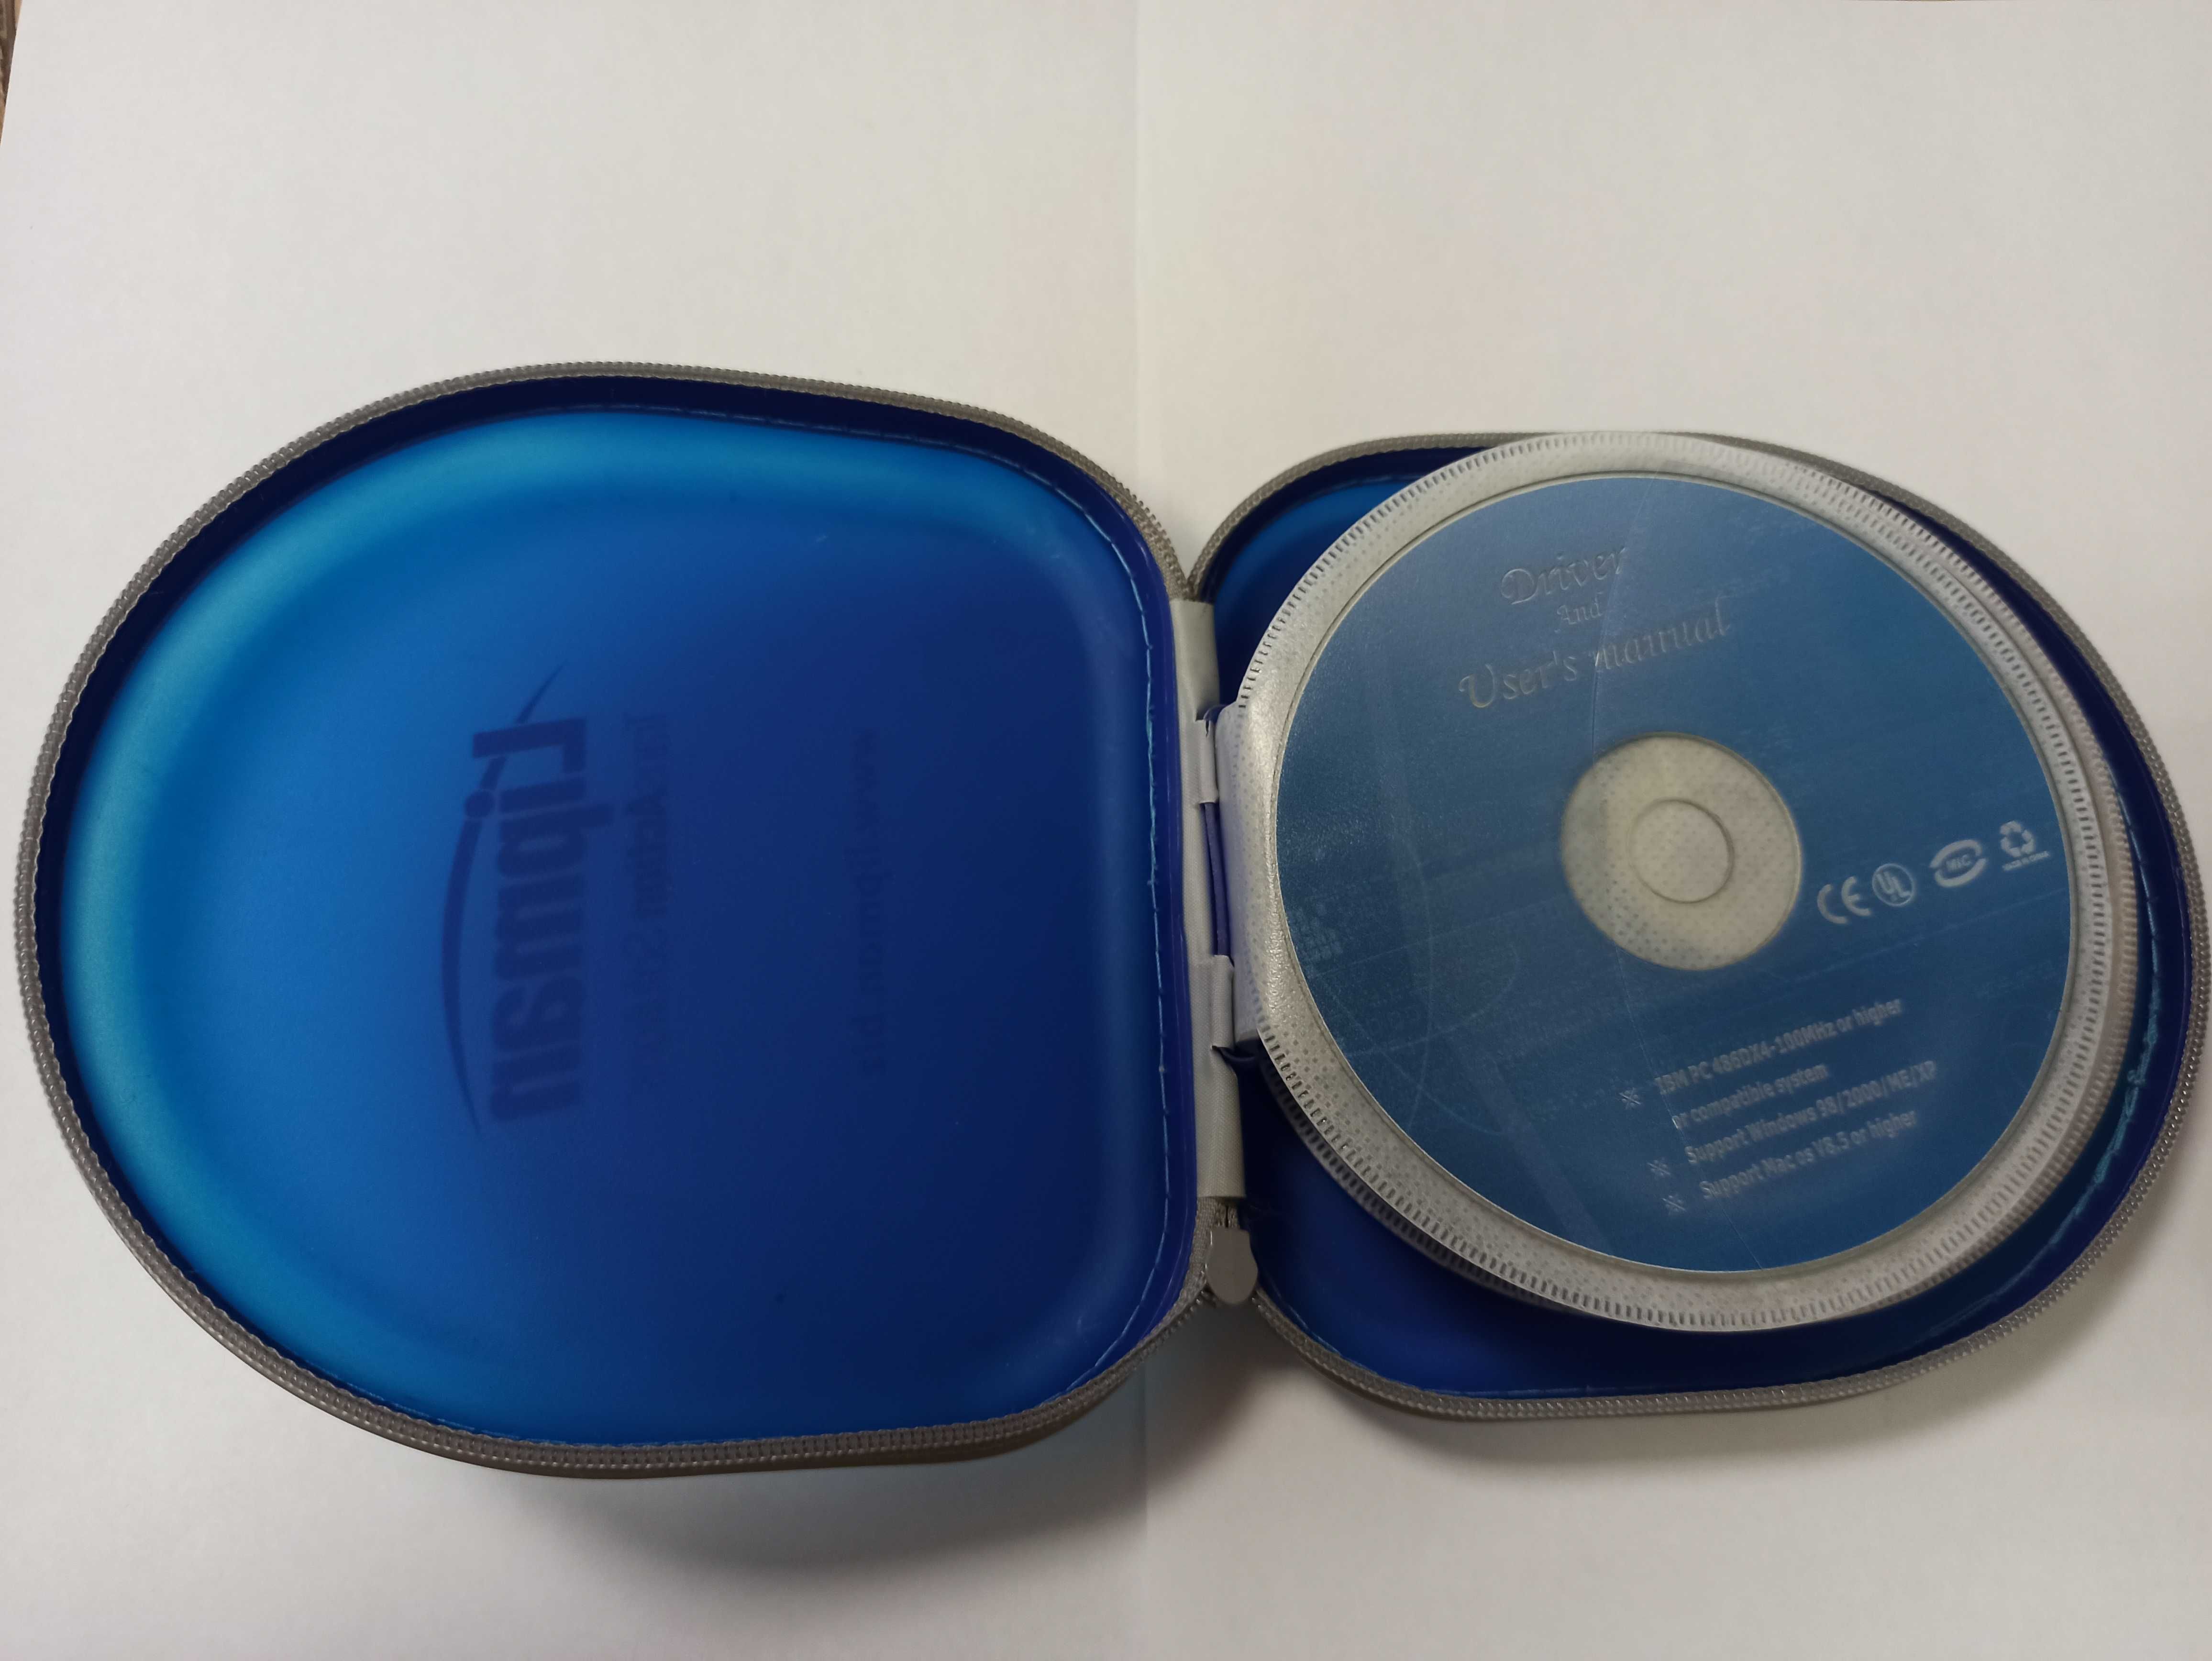 Чехол барсетка для DWD CD дисков на 24 диска в комплекте с дисками